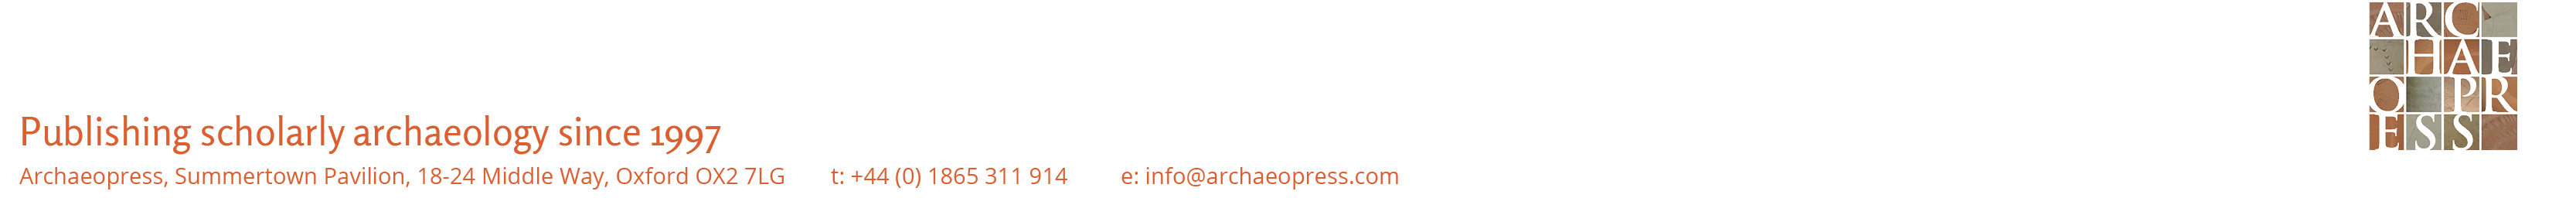 Archaeopress Journals Homepage